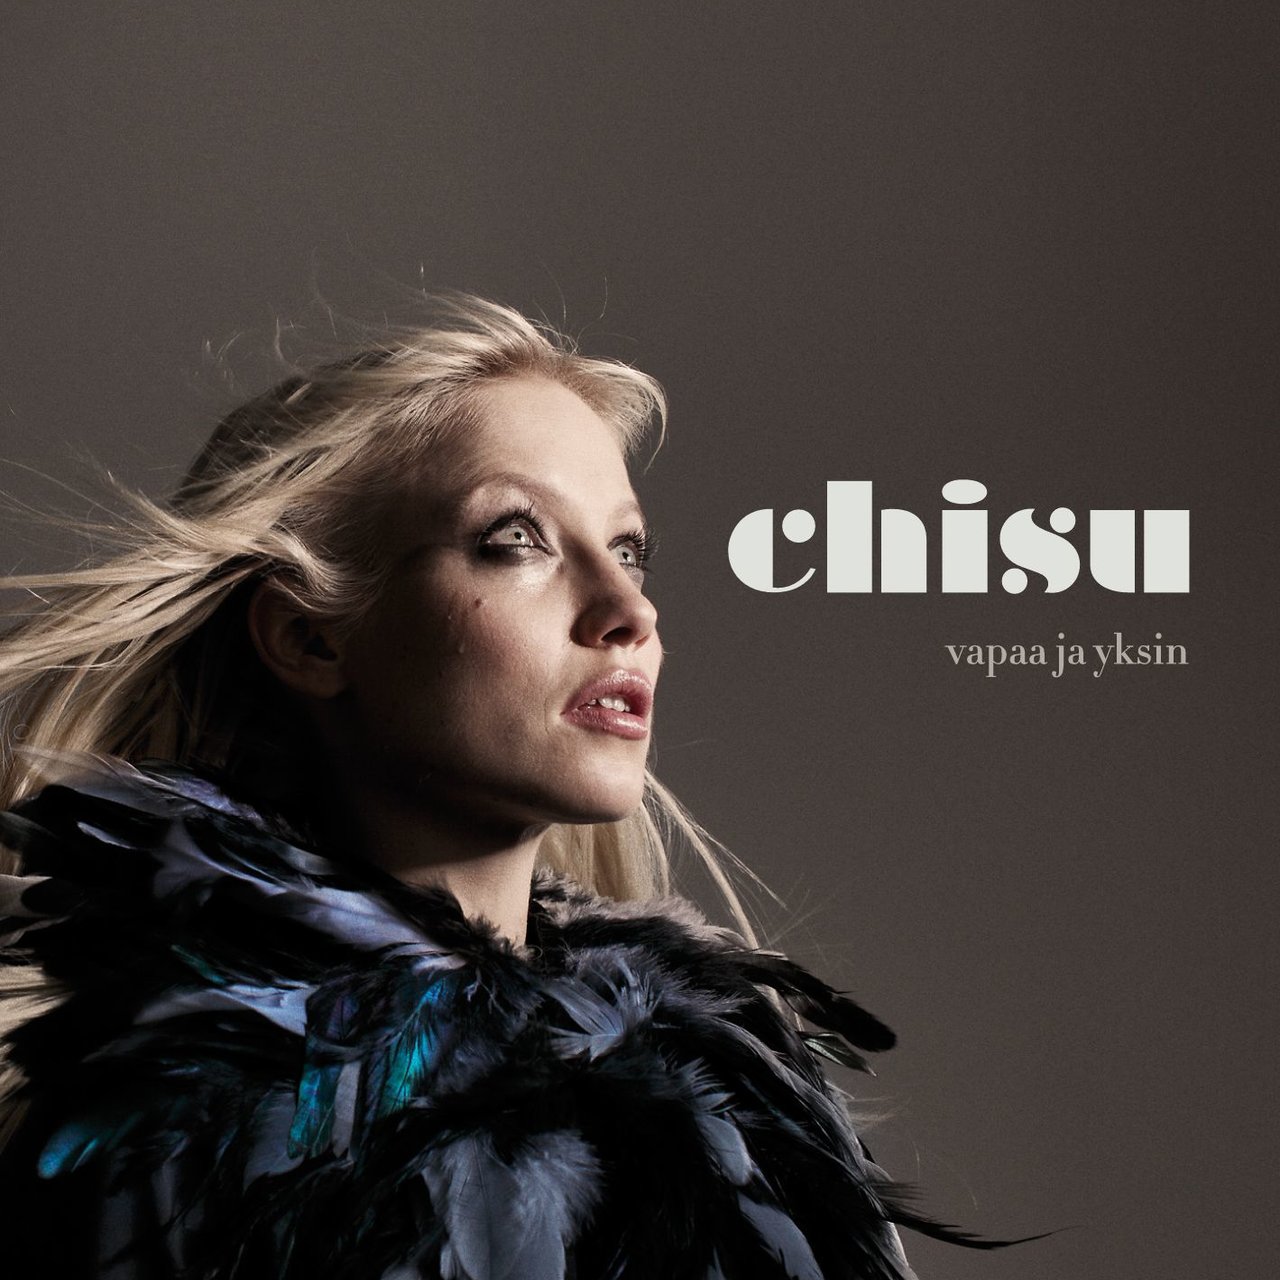 Chisu Vapaa ja yksin cover artwork